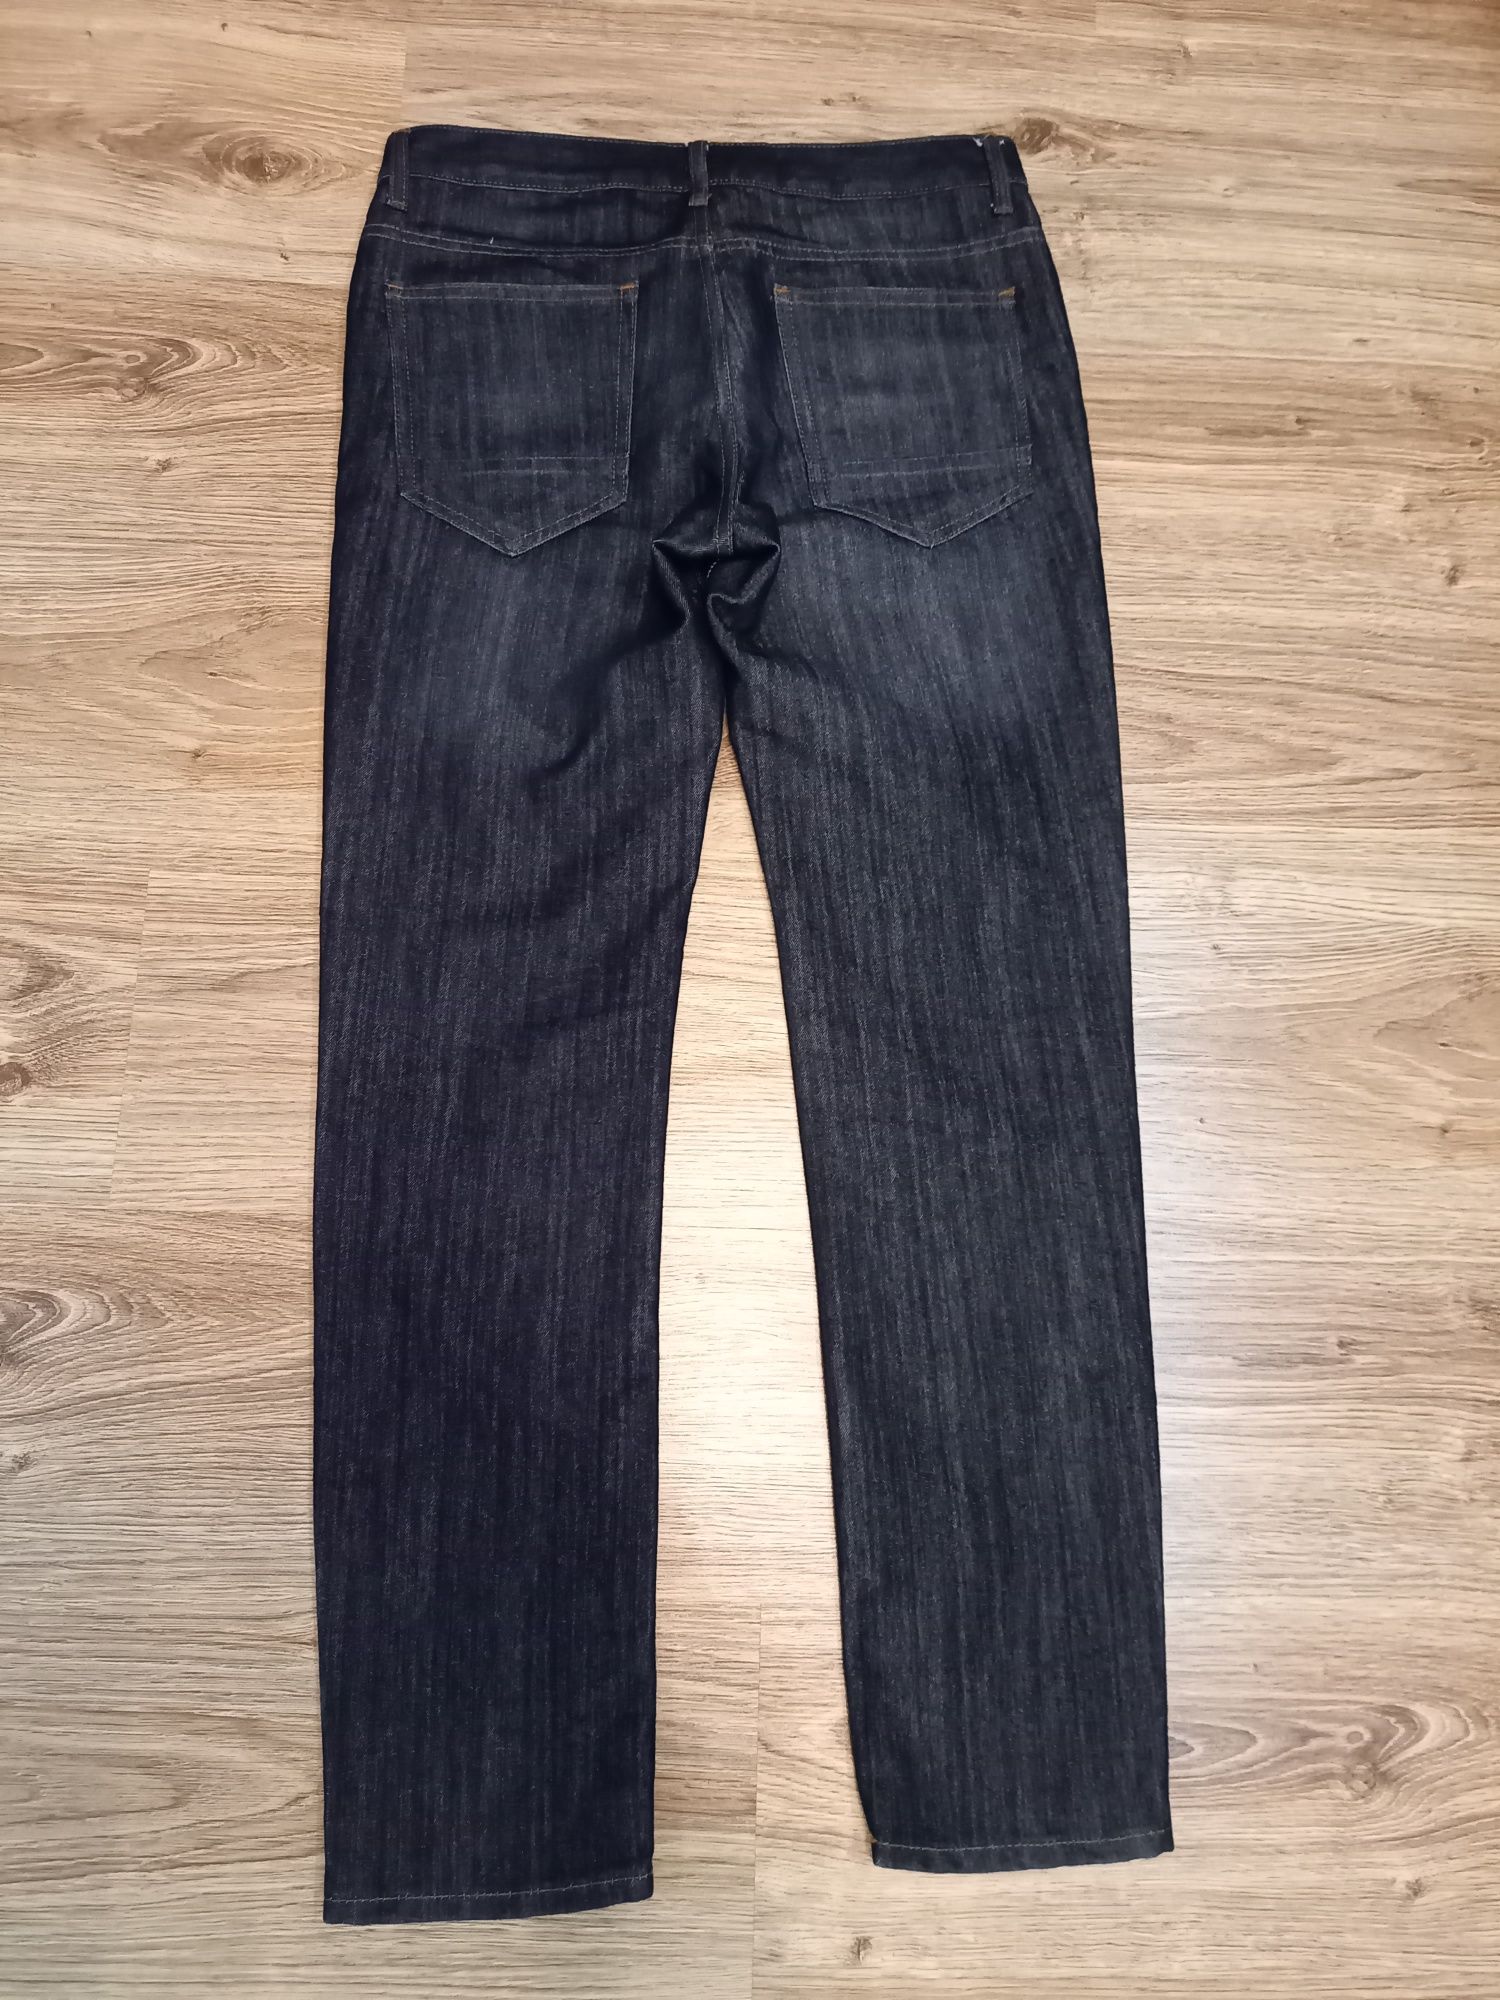 Spodnie jeansy, męskie Denim CO, W30 L30 - NOWE